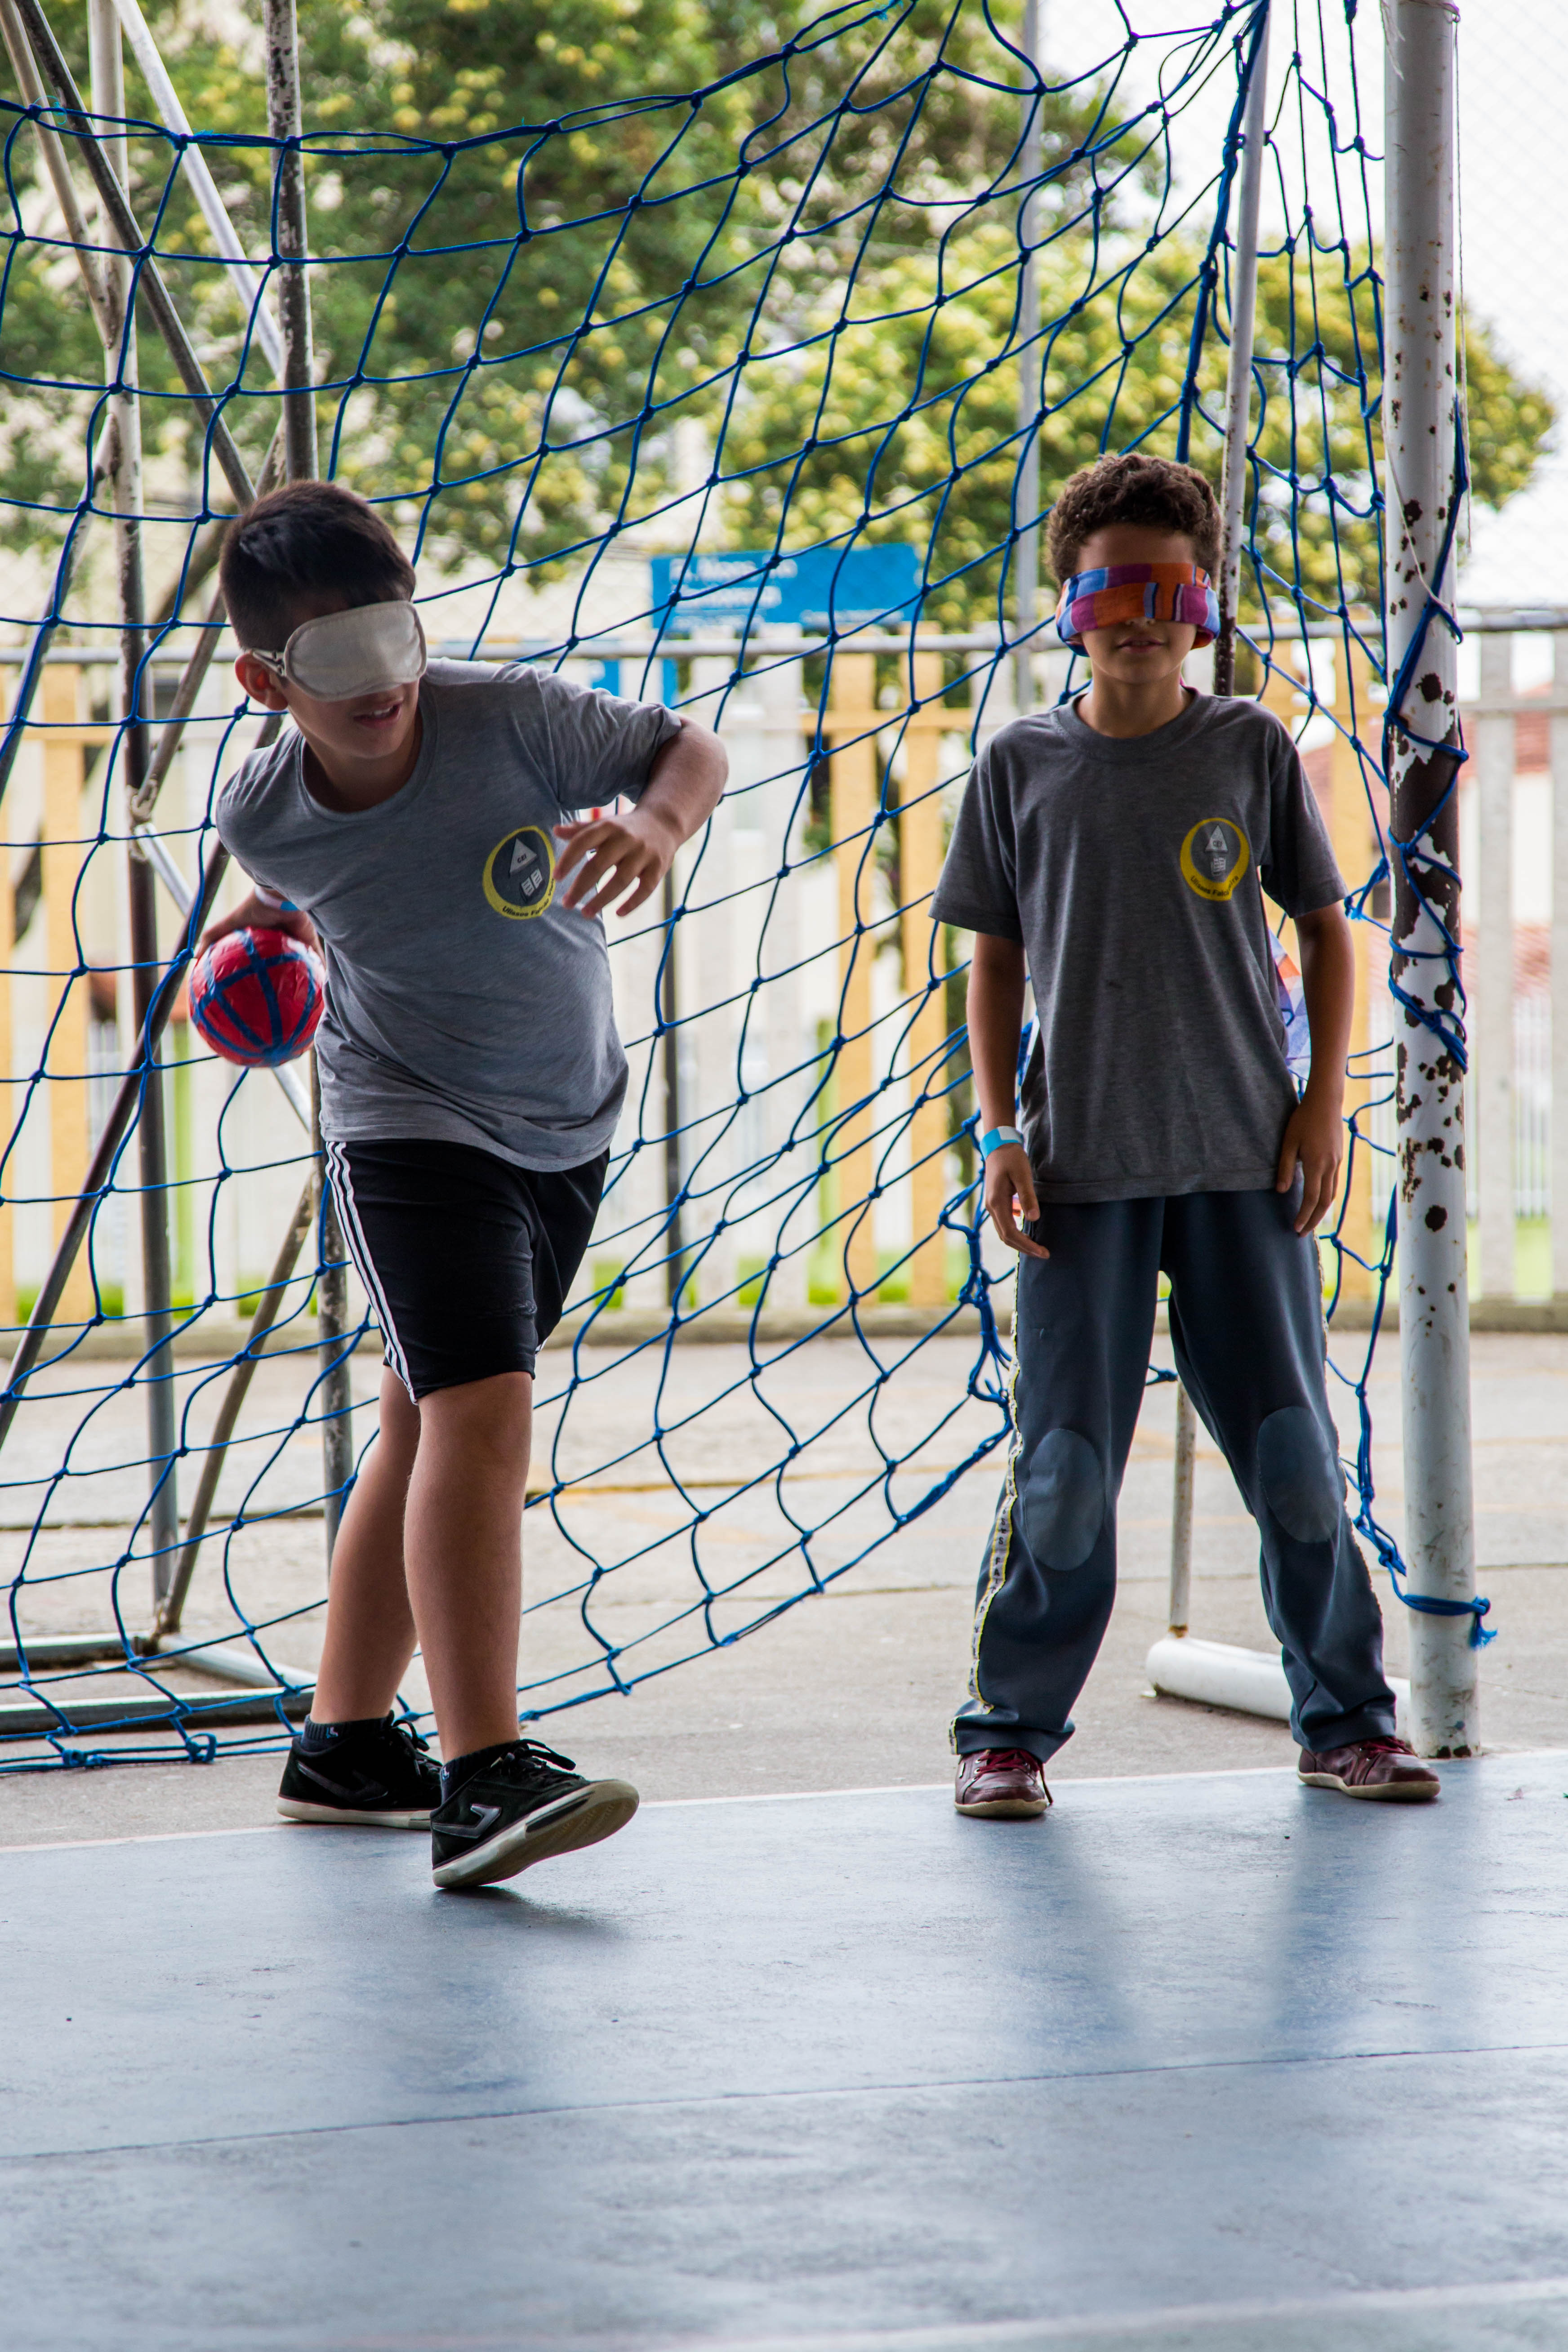 Dois meninos vestem uniformes escolares e têm os olhos vendados. Eles estão à frente de uma rede de gol em uma quadra esportiva. O garoto à esquerda segura uma bola de tamanho médio e faz movimento com o braço para arremessá-la.